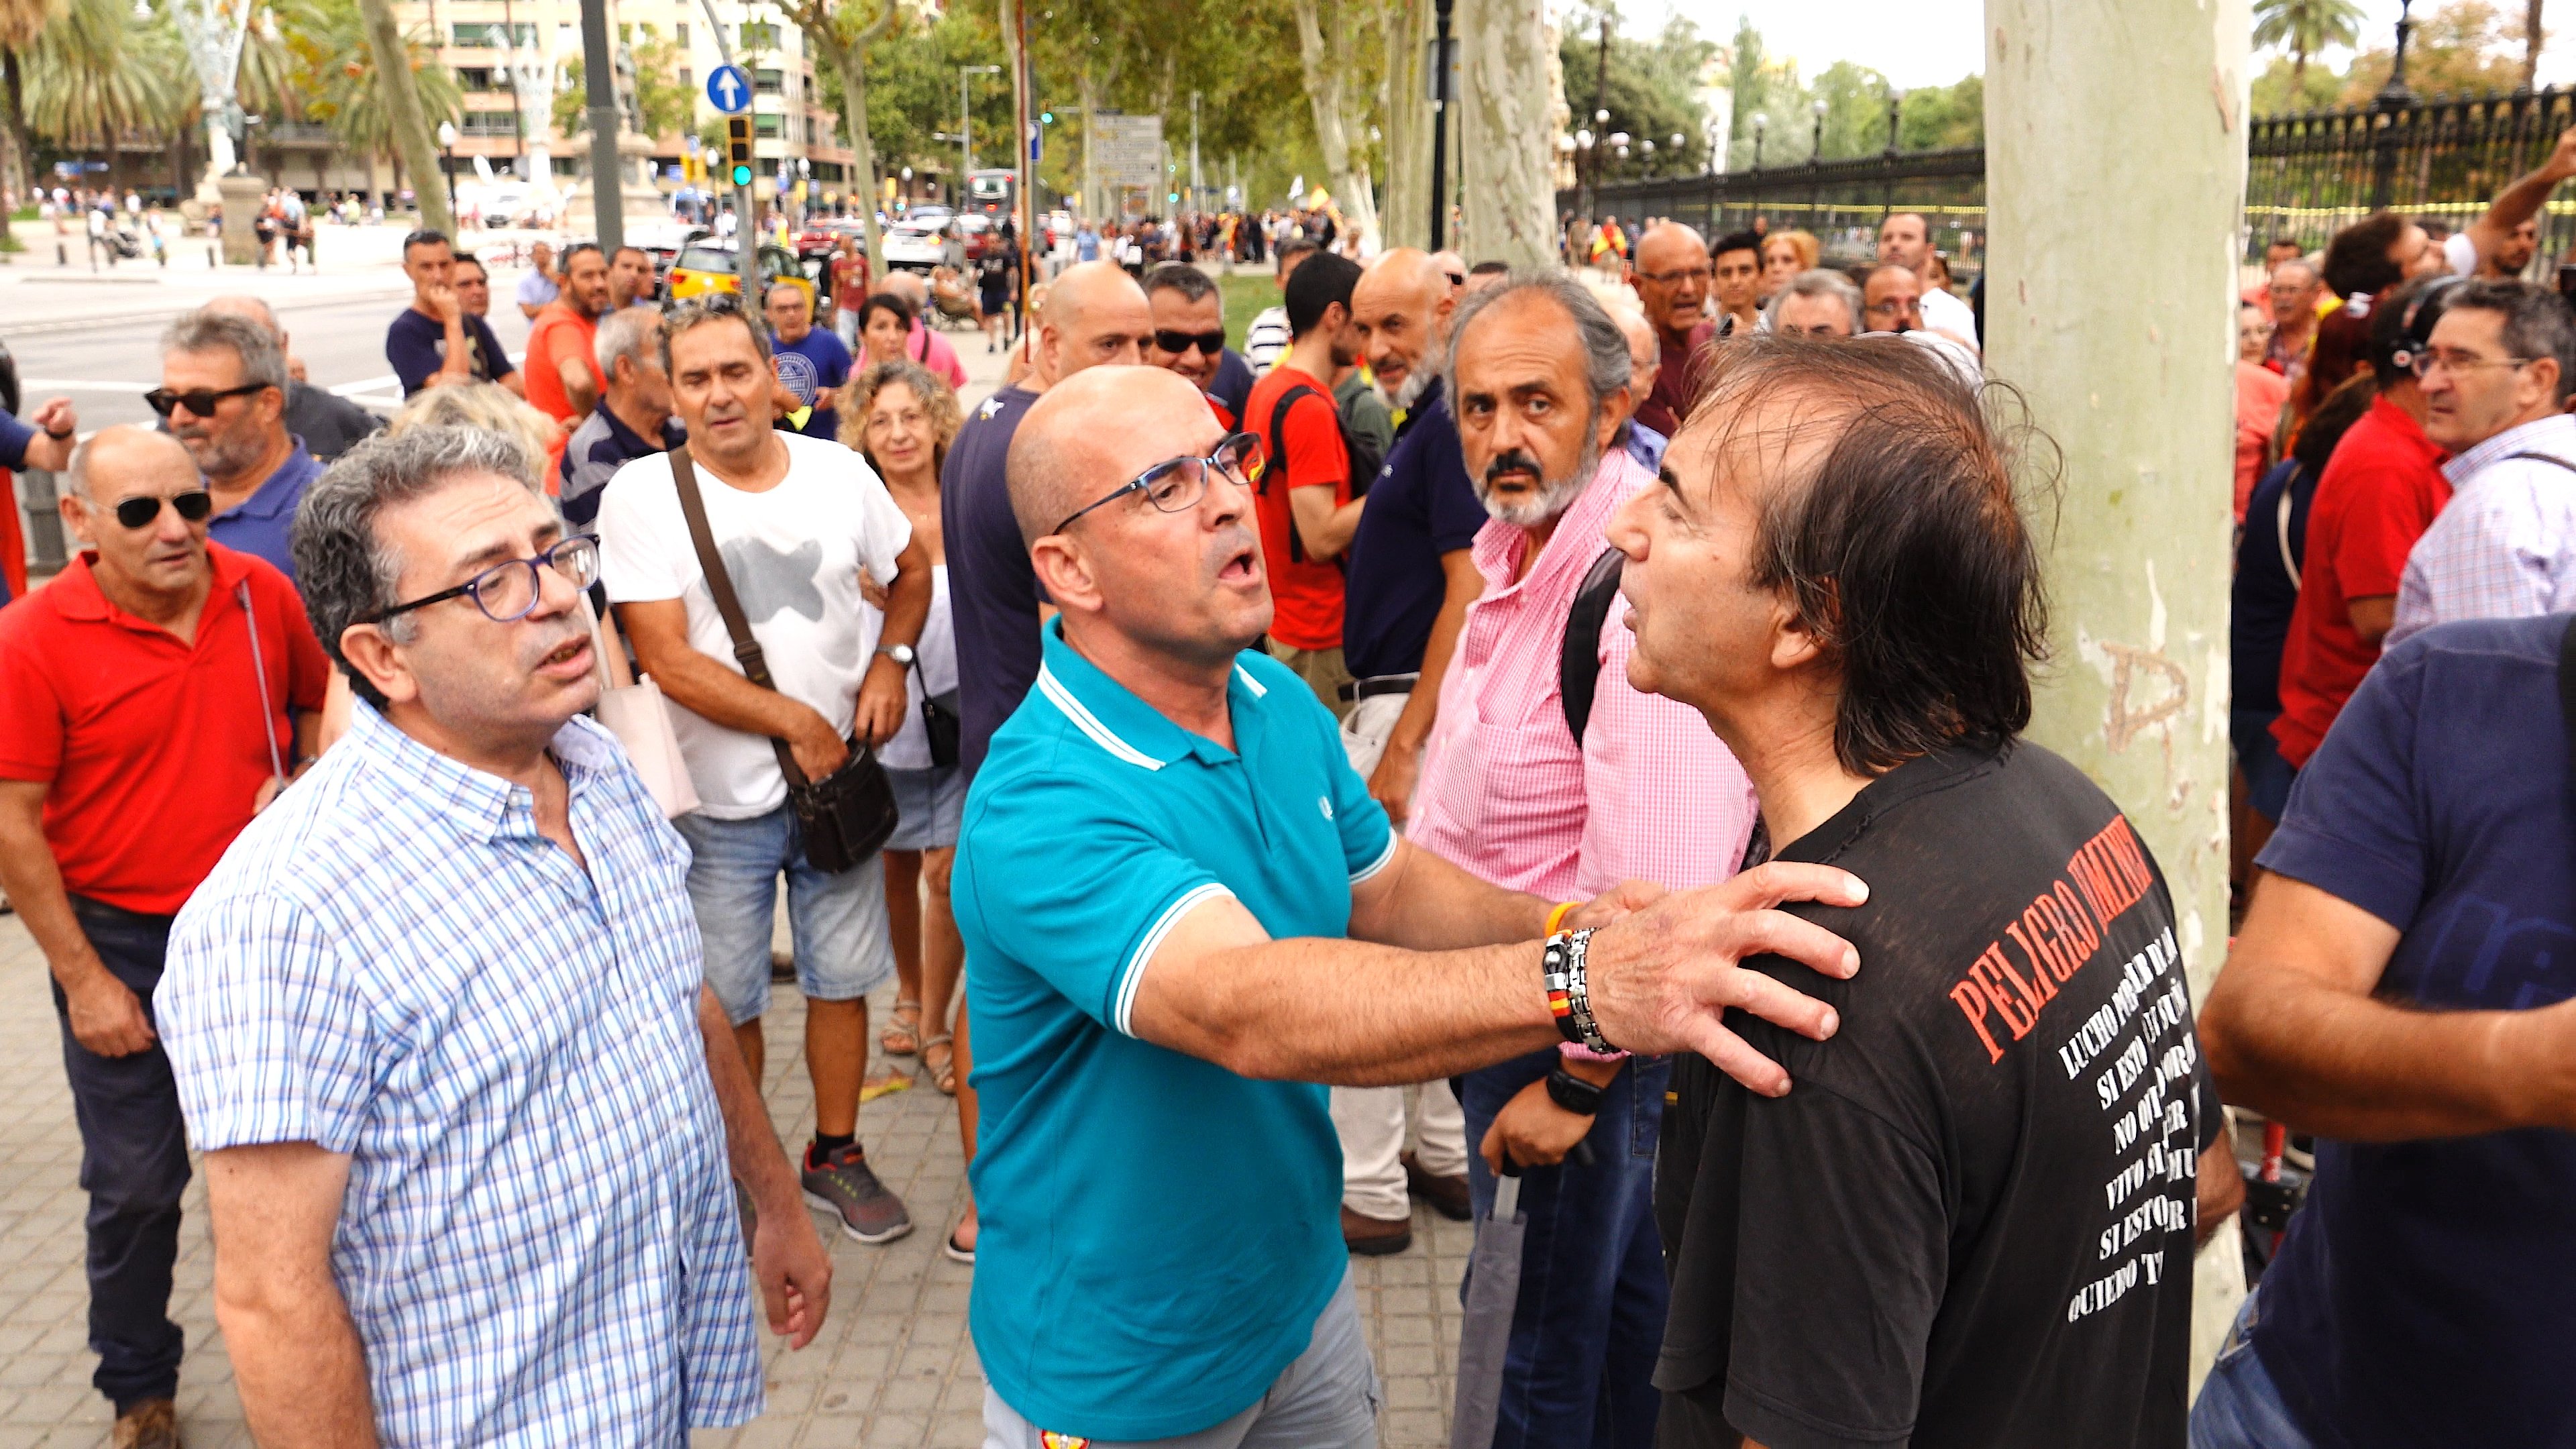 VÍDEO: Baralla entre dos unionistes abans de començar la concentració a Barcelona